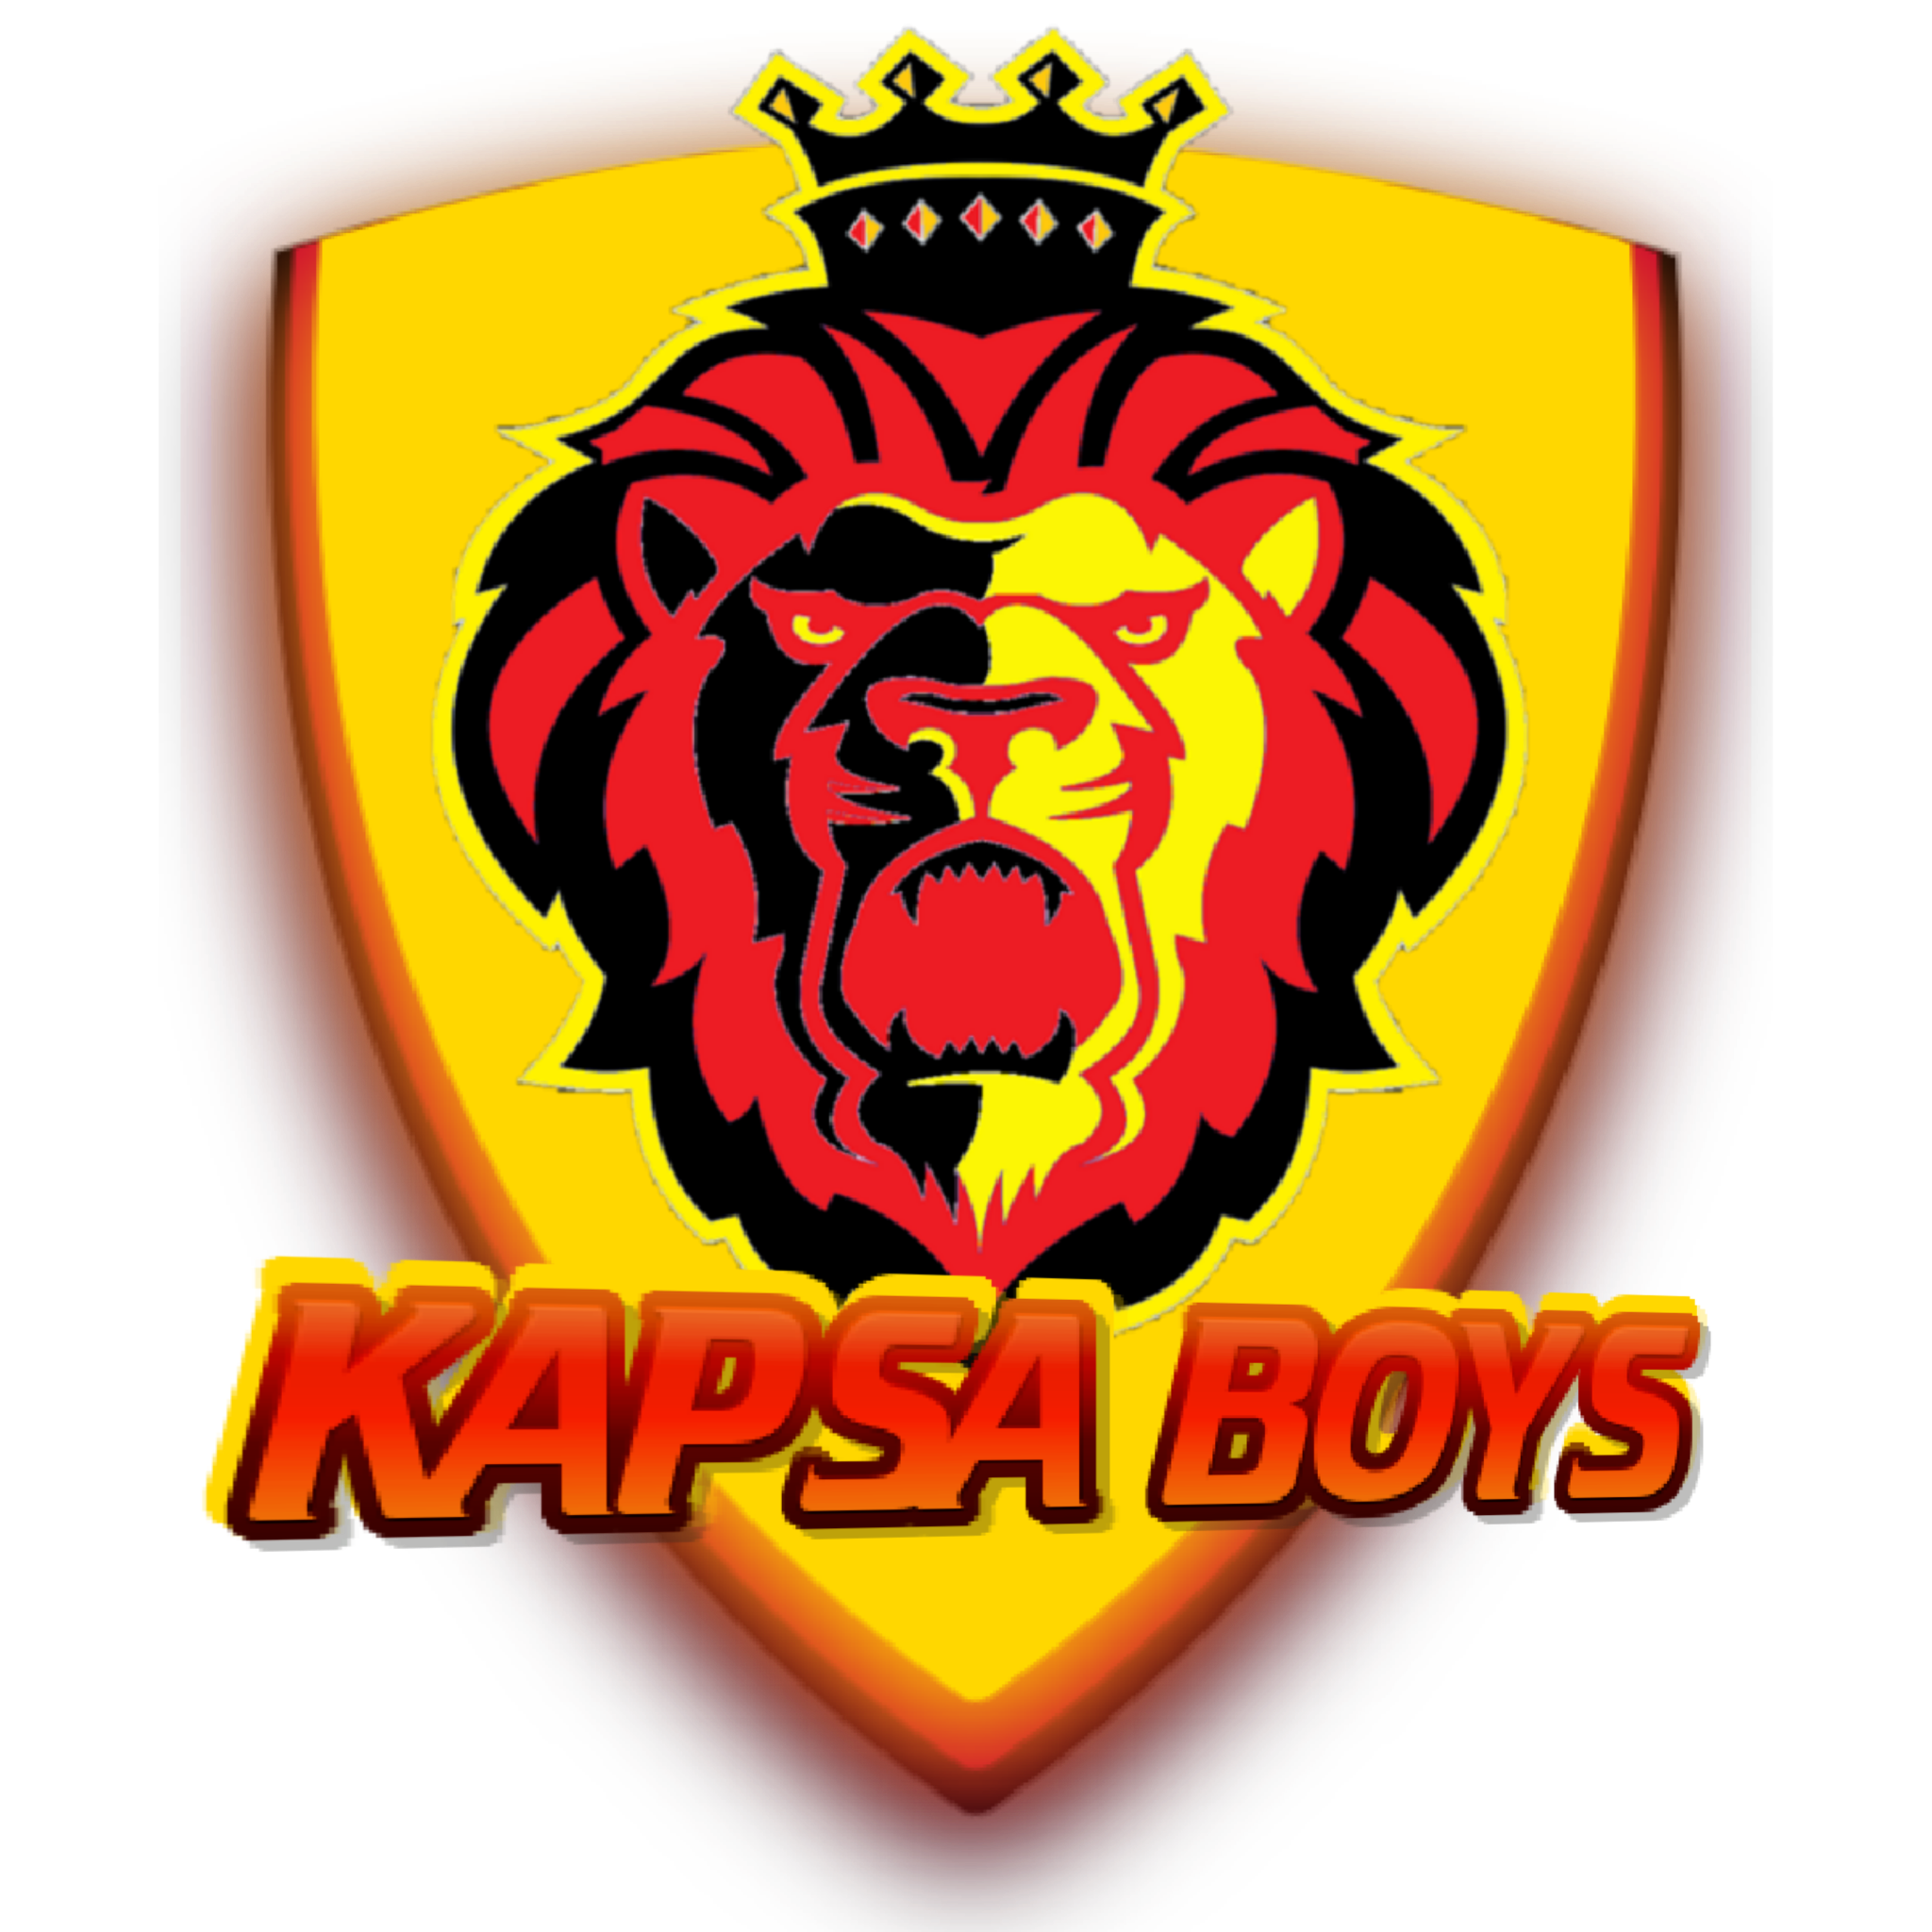 Kapsa Boys